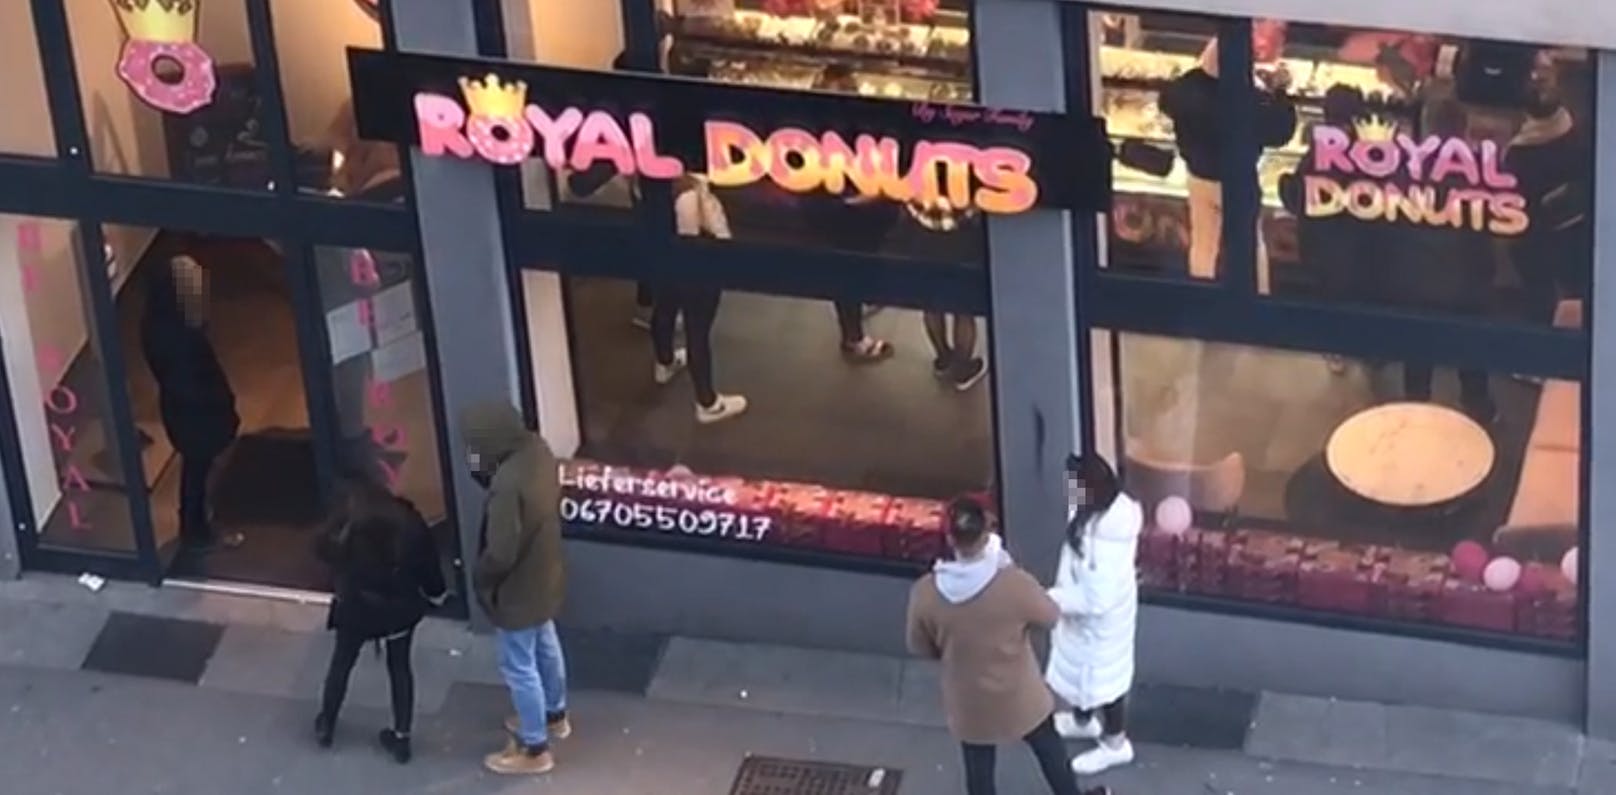 Diesen Donut-Laden scheint der Mindestabstand nicht zu interessieren